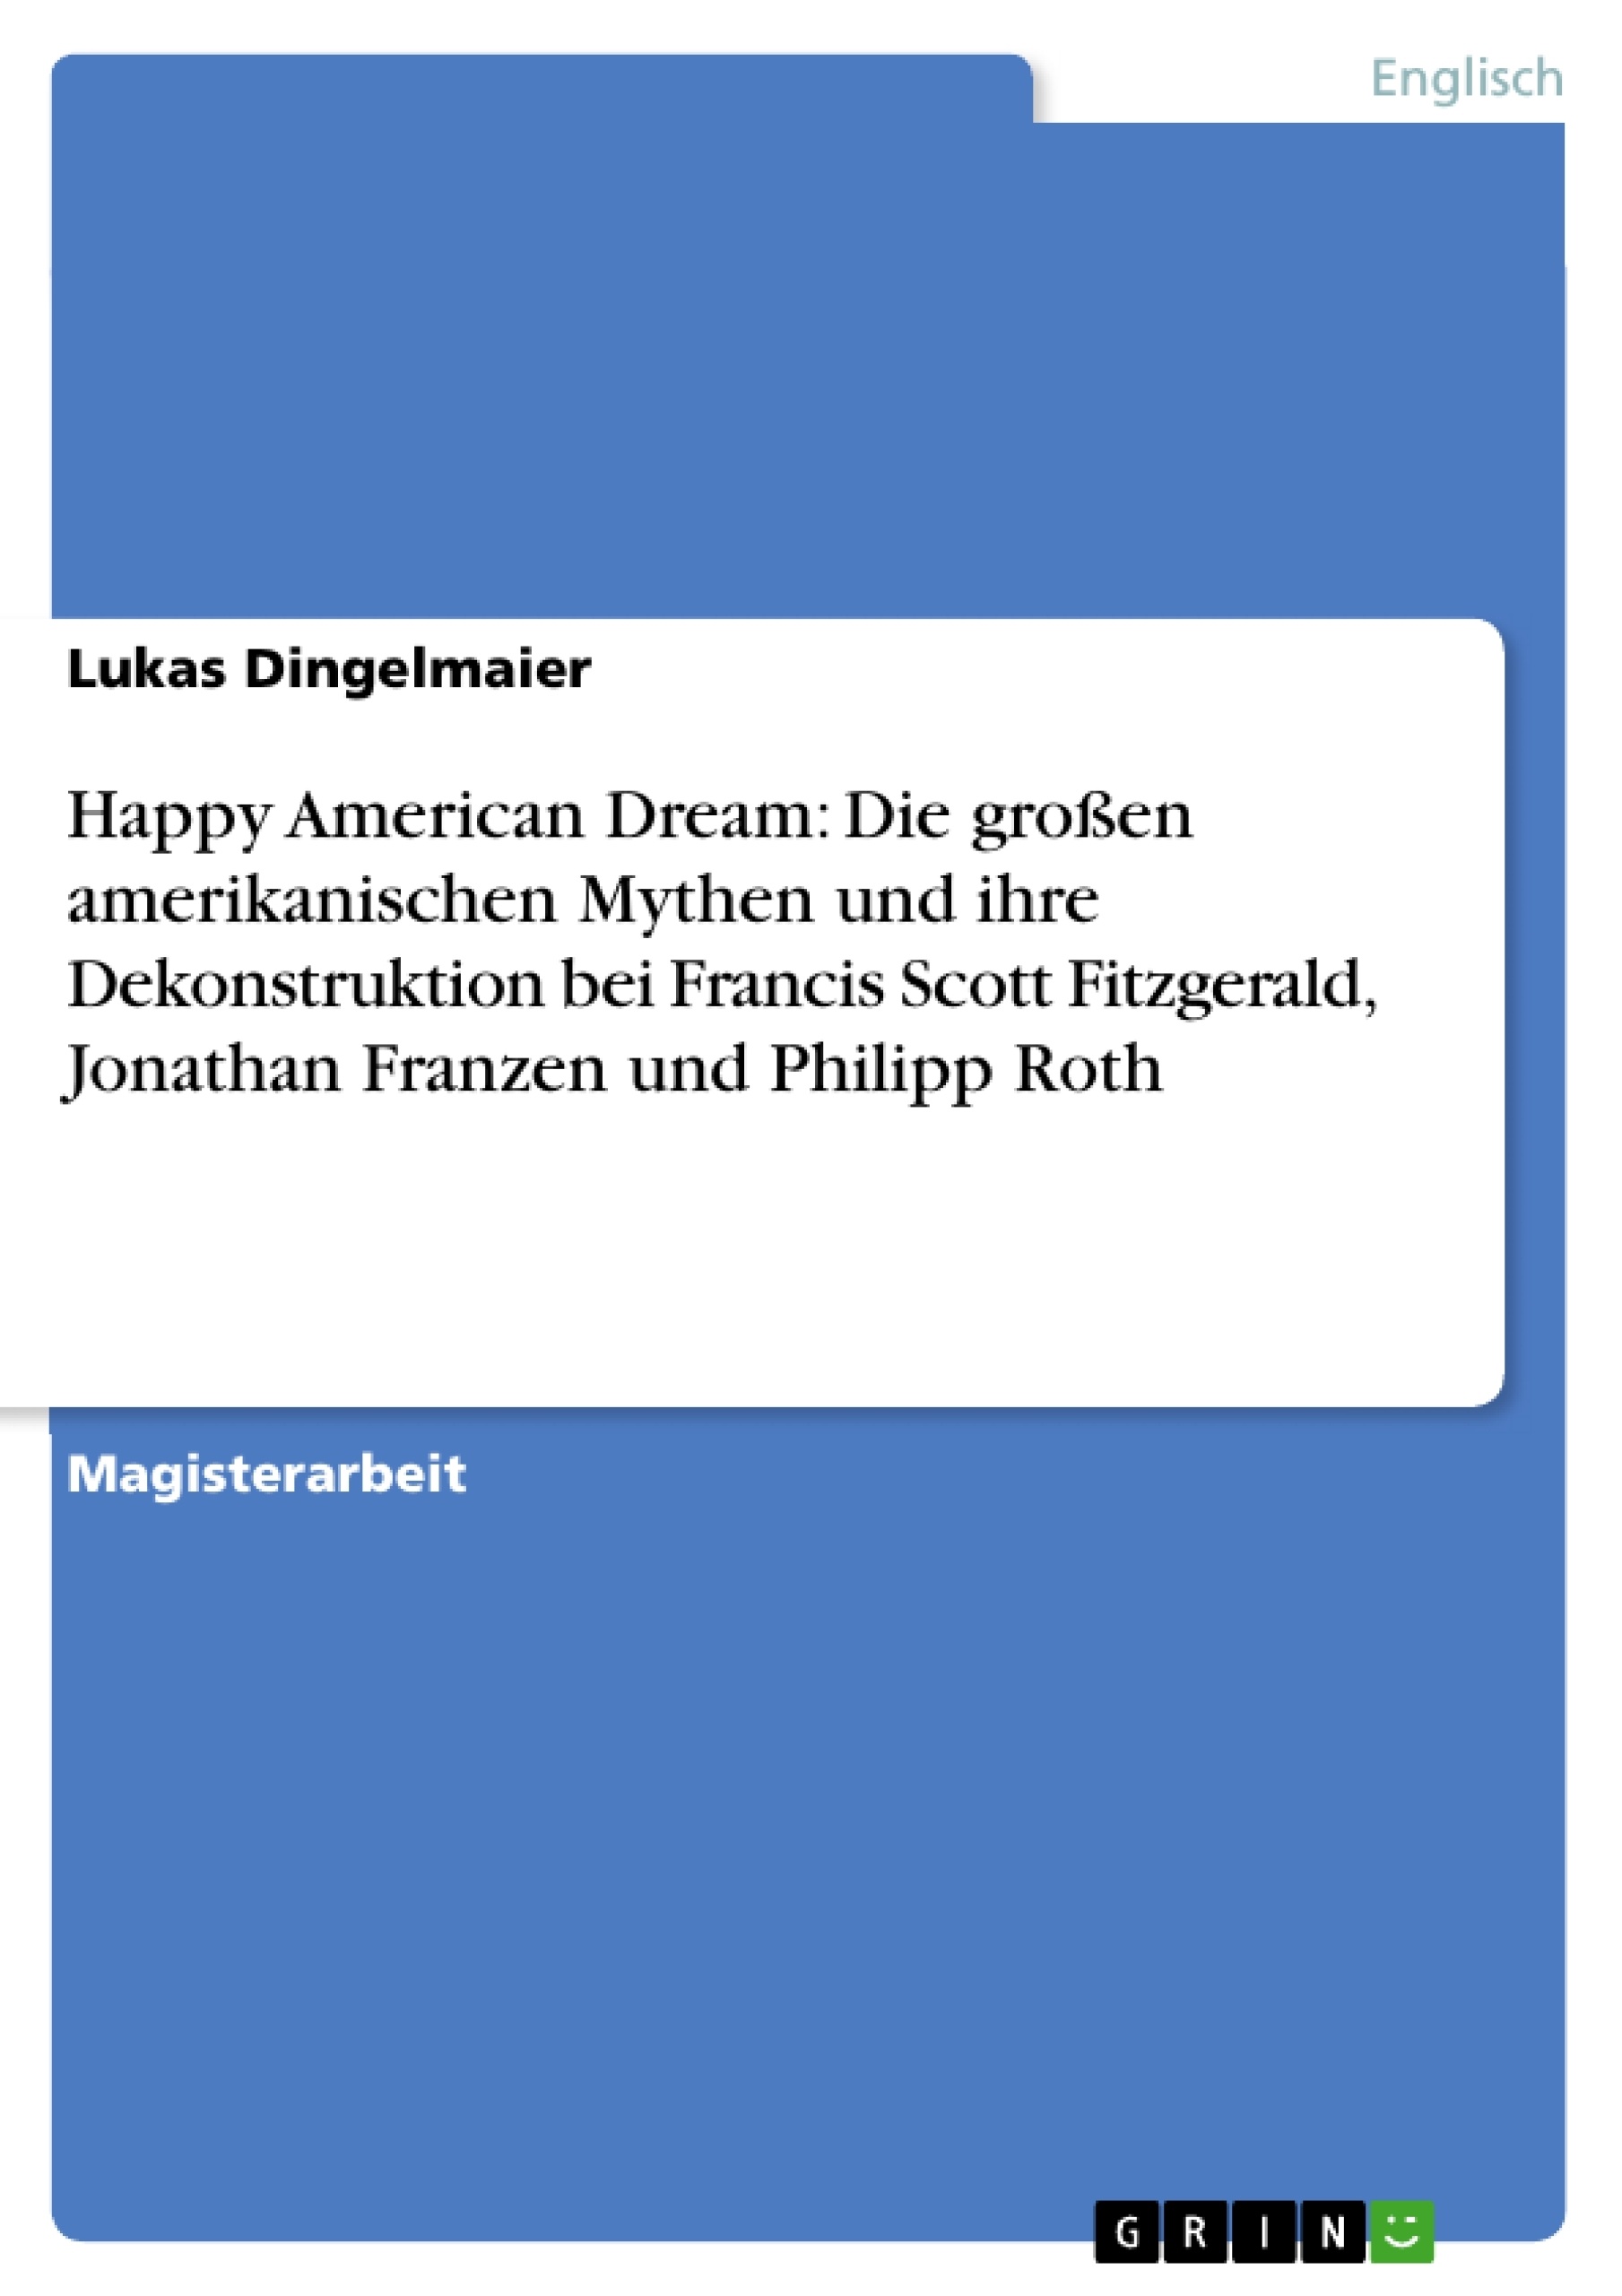 Titel: Happy American Dream: Die großen amerikanischen Mythen und ihre Dekonstruktion bei Francis Scott Fitzgerald, Jonathan Franzen und Philipp Roth